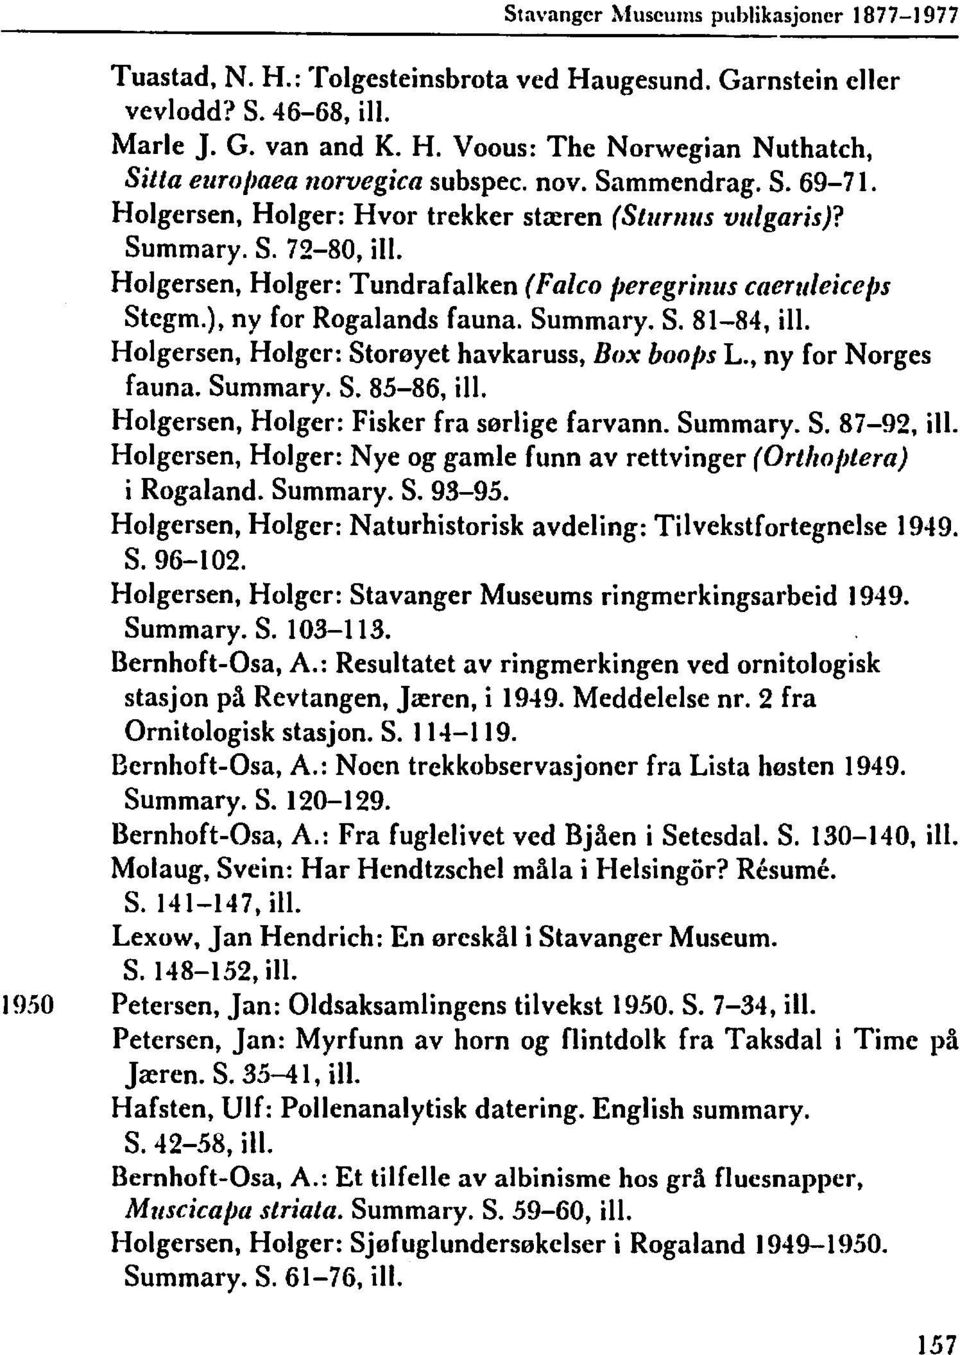 ), ny for Rogalands fauna. Summary. S. 81-84, ill. Holgersen, Holger: Storeyet havkaruss, Box boobs L., ny for Norges fauna. Summary. S. 85-86, ill. Holgersen, Holger: Fisker fra serlige farvann.